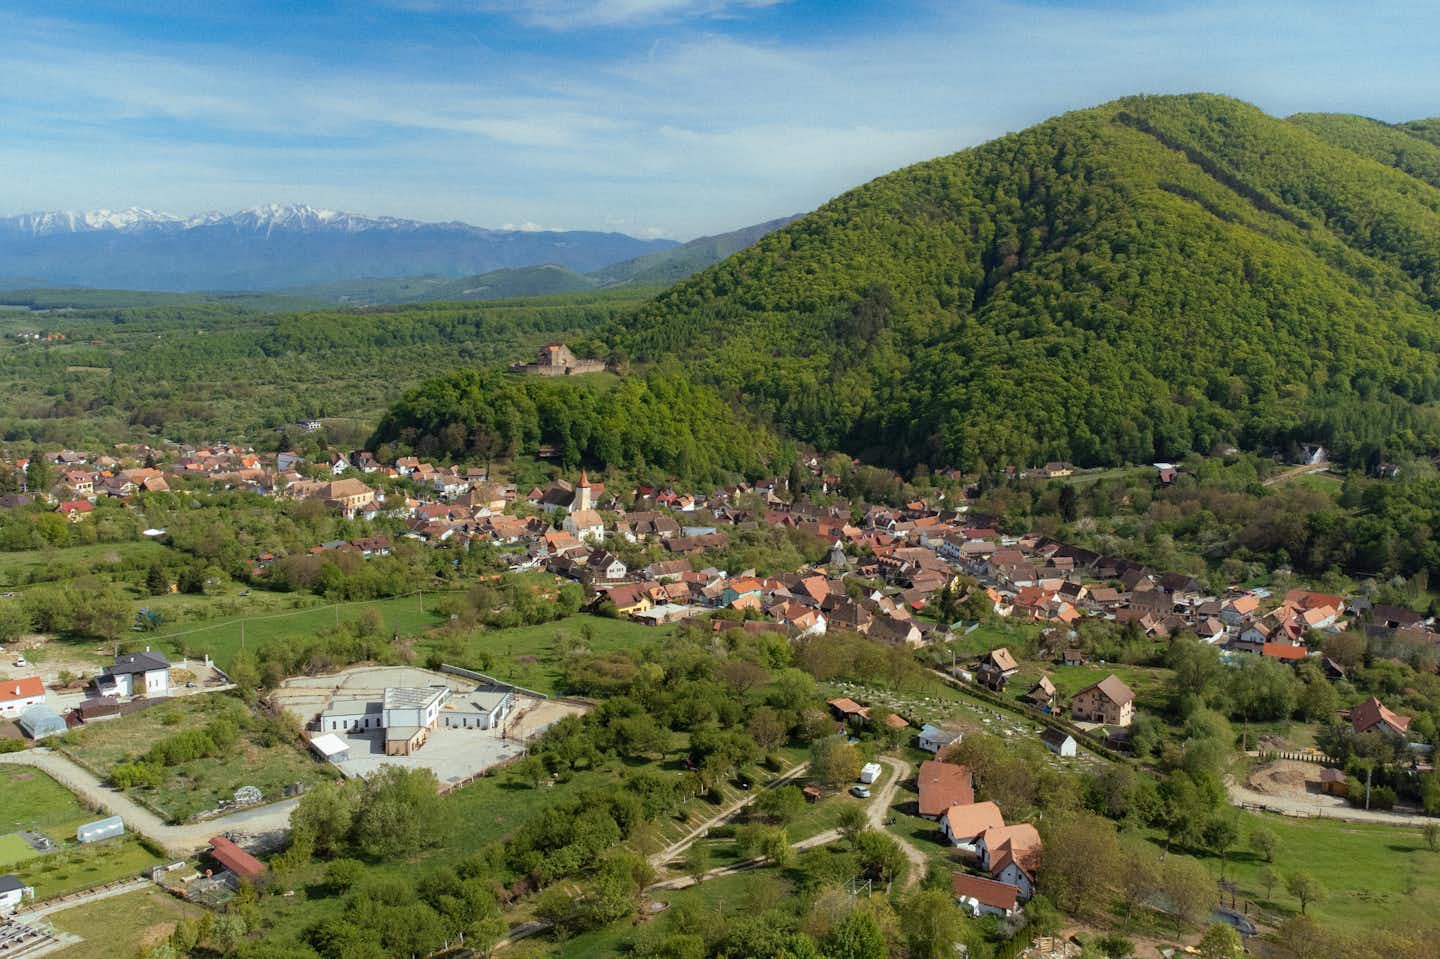 Camping Sibiu Ananas  - Luftaufnahme des Campingplatzes im Tal mit Bergen im Hintergrund